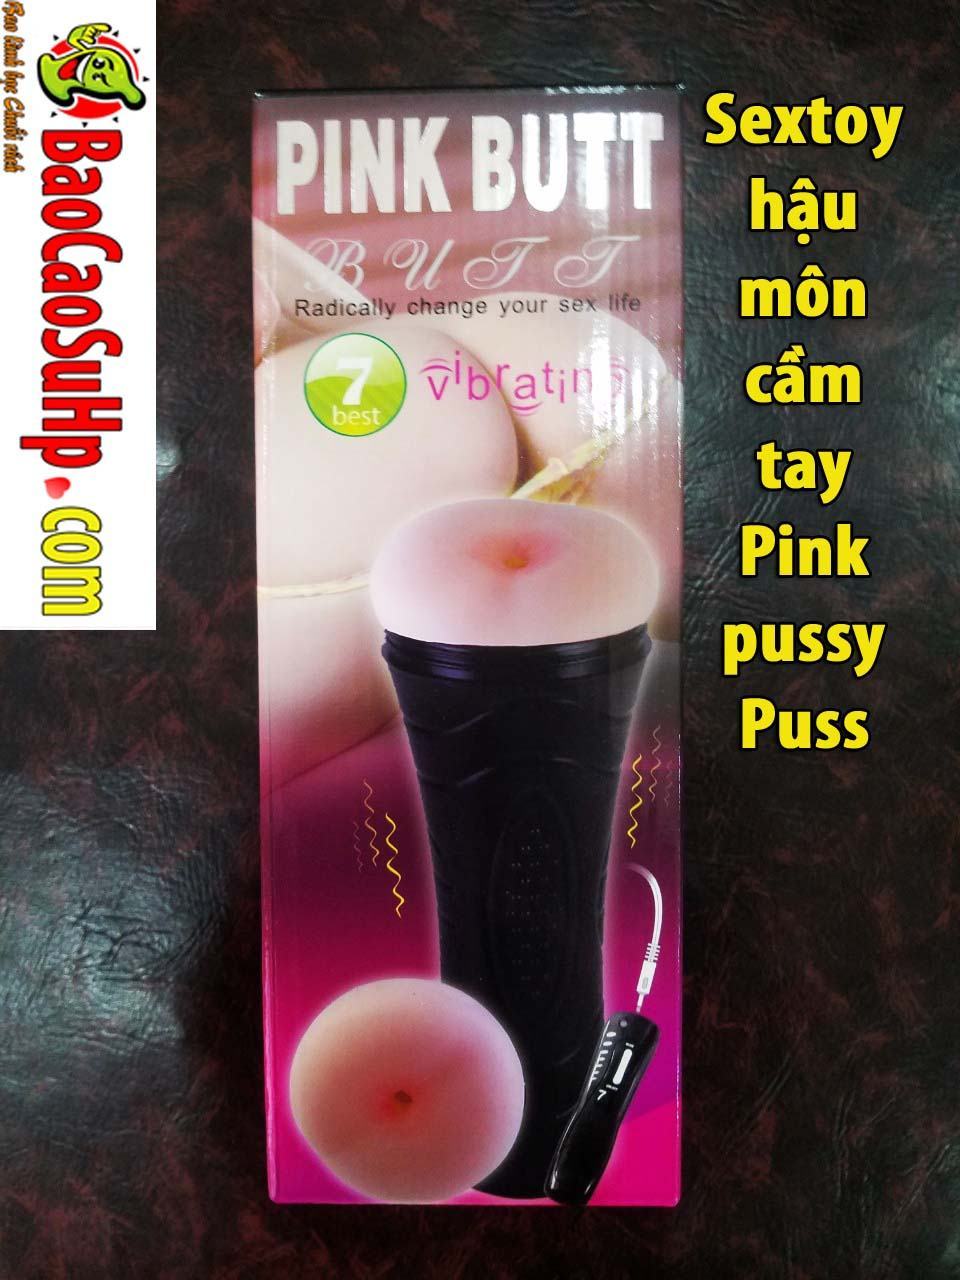 20191211200837 6145258 sextoyhau mon cam tay pink pussy puss 1 - 10 món đồ chơi tình dục giá rẻ nhất dành cho nam và nữ 2021